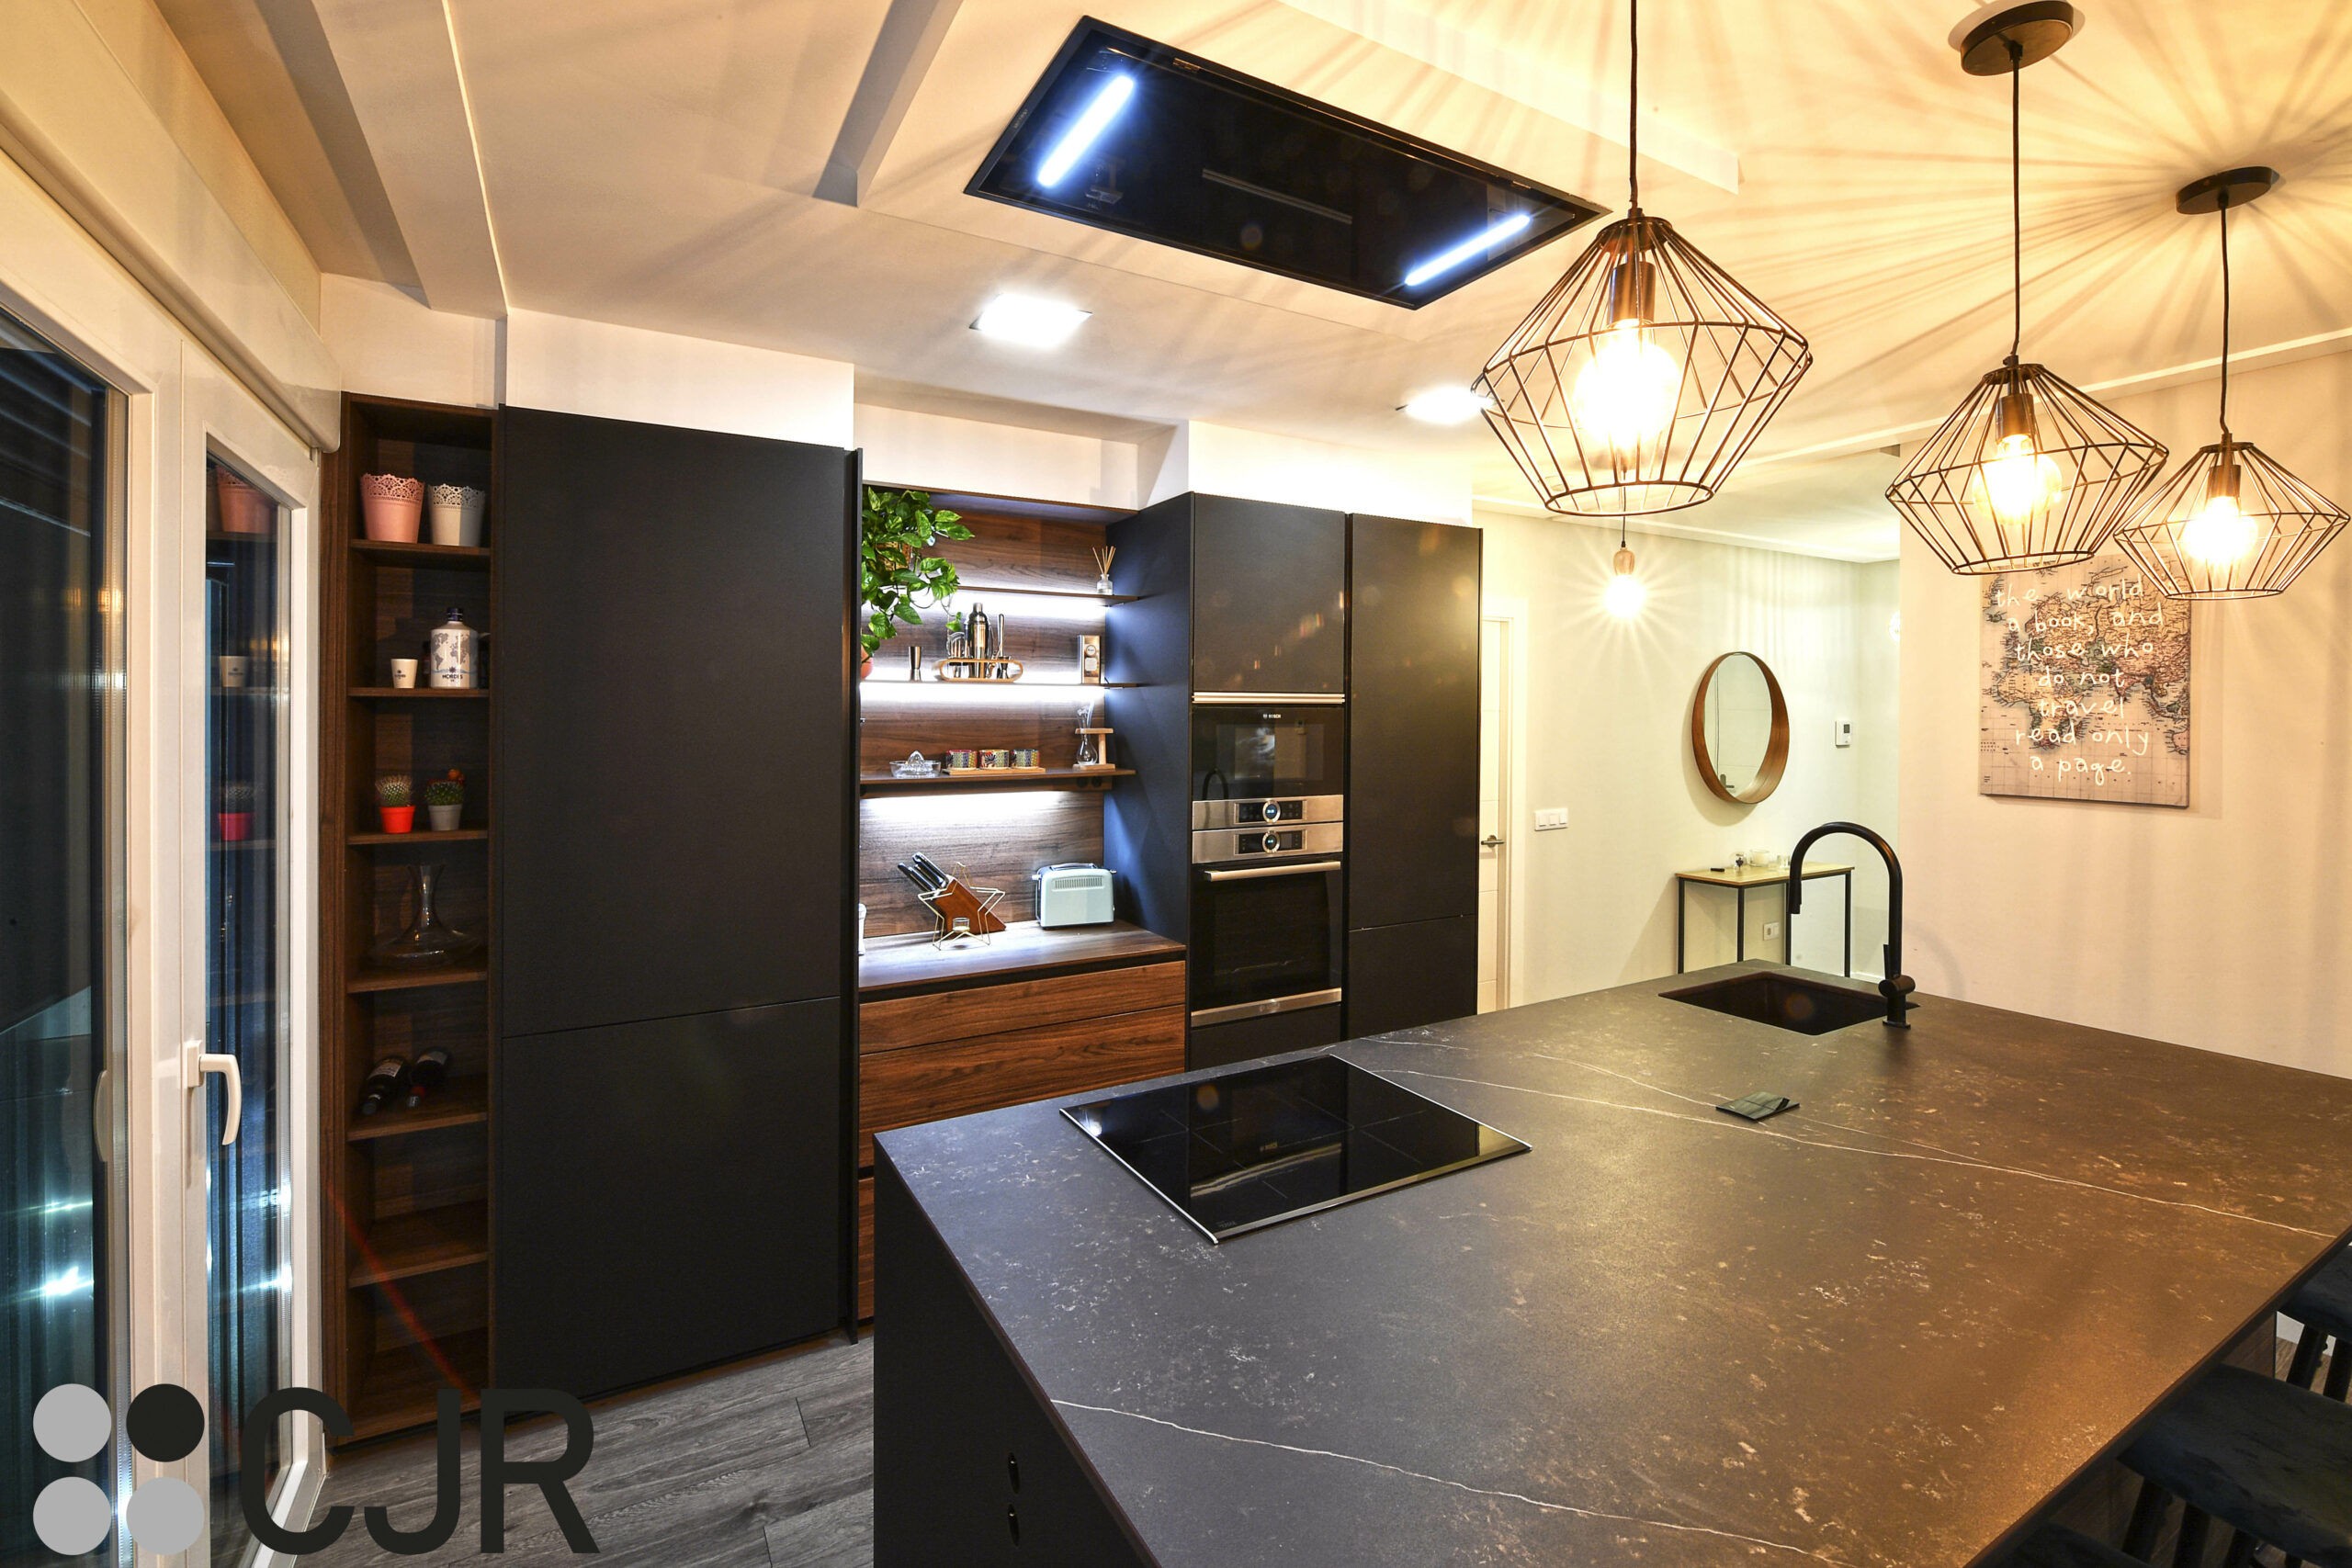 cocina moderna con isla abierta al salón en negro y madera cjr